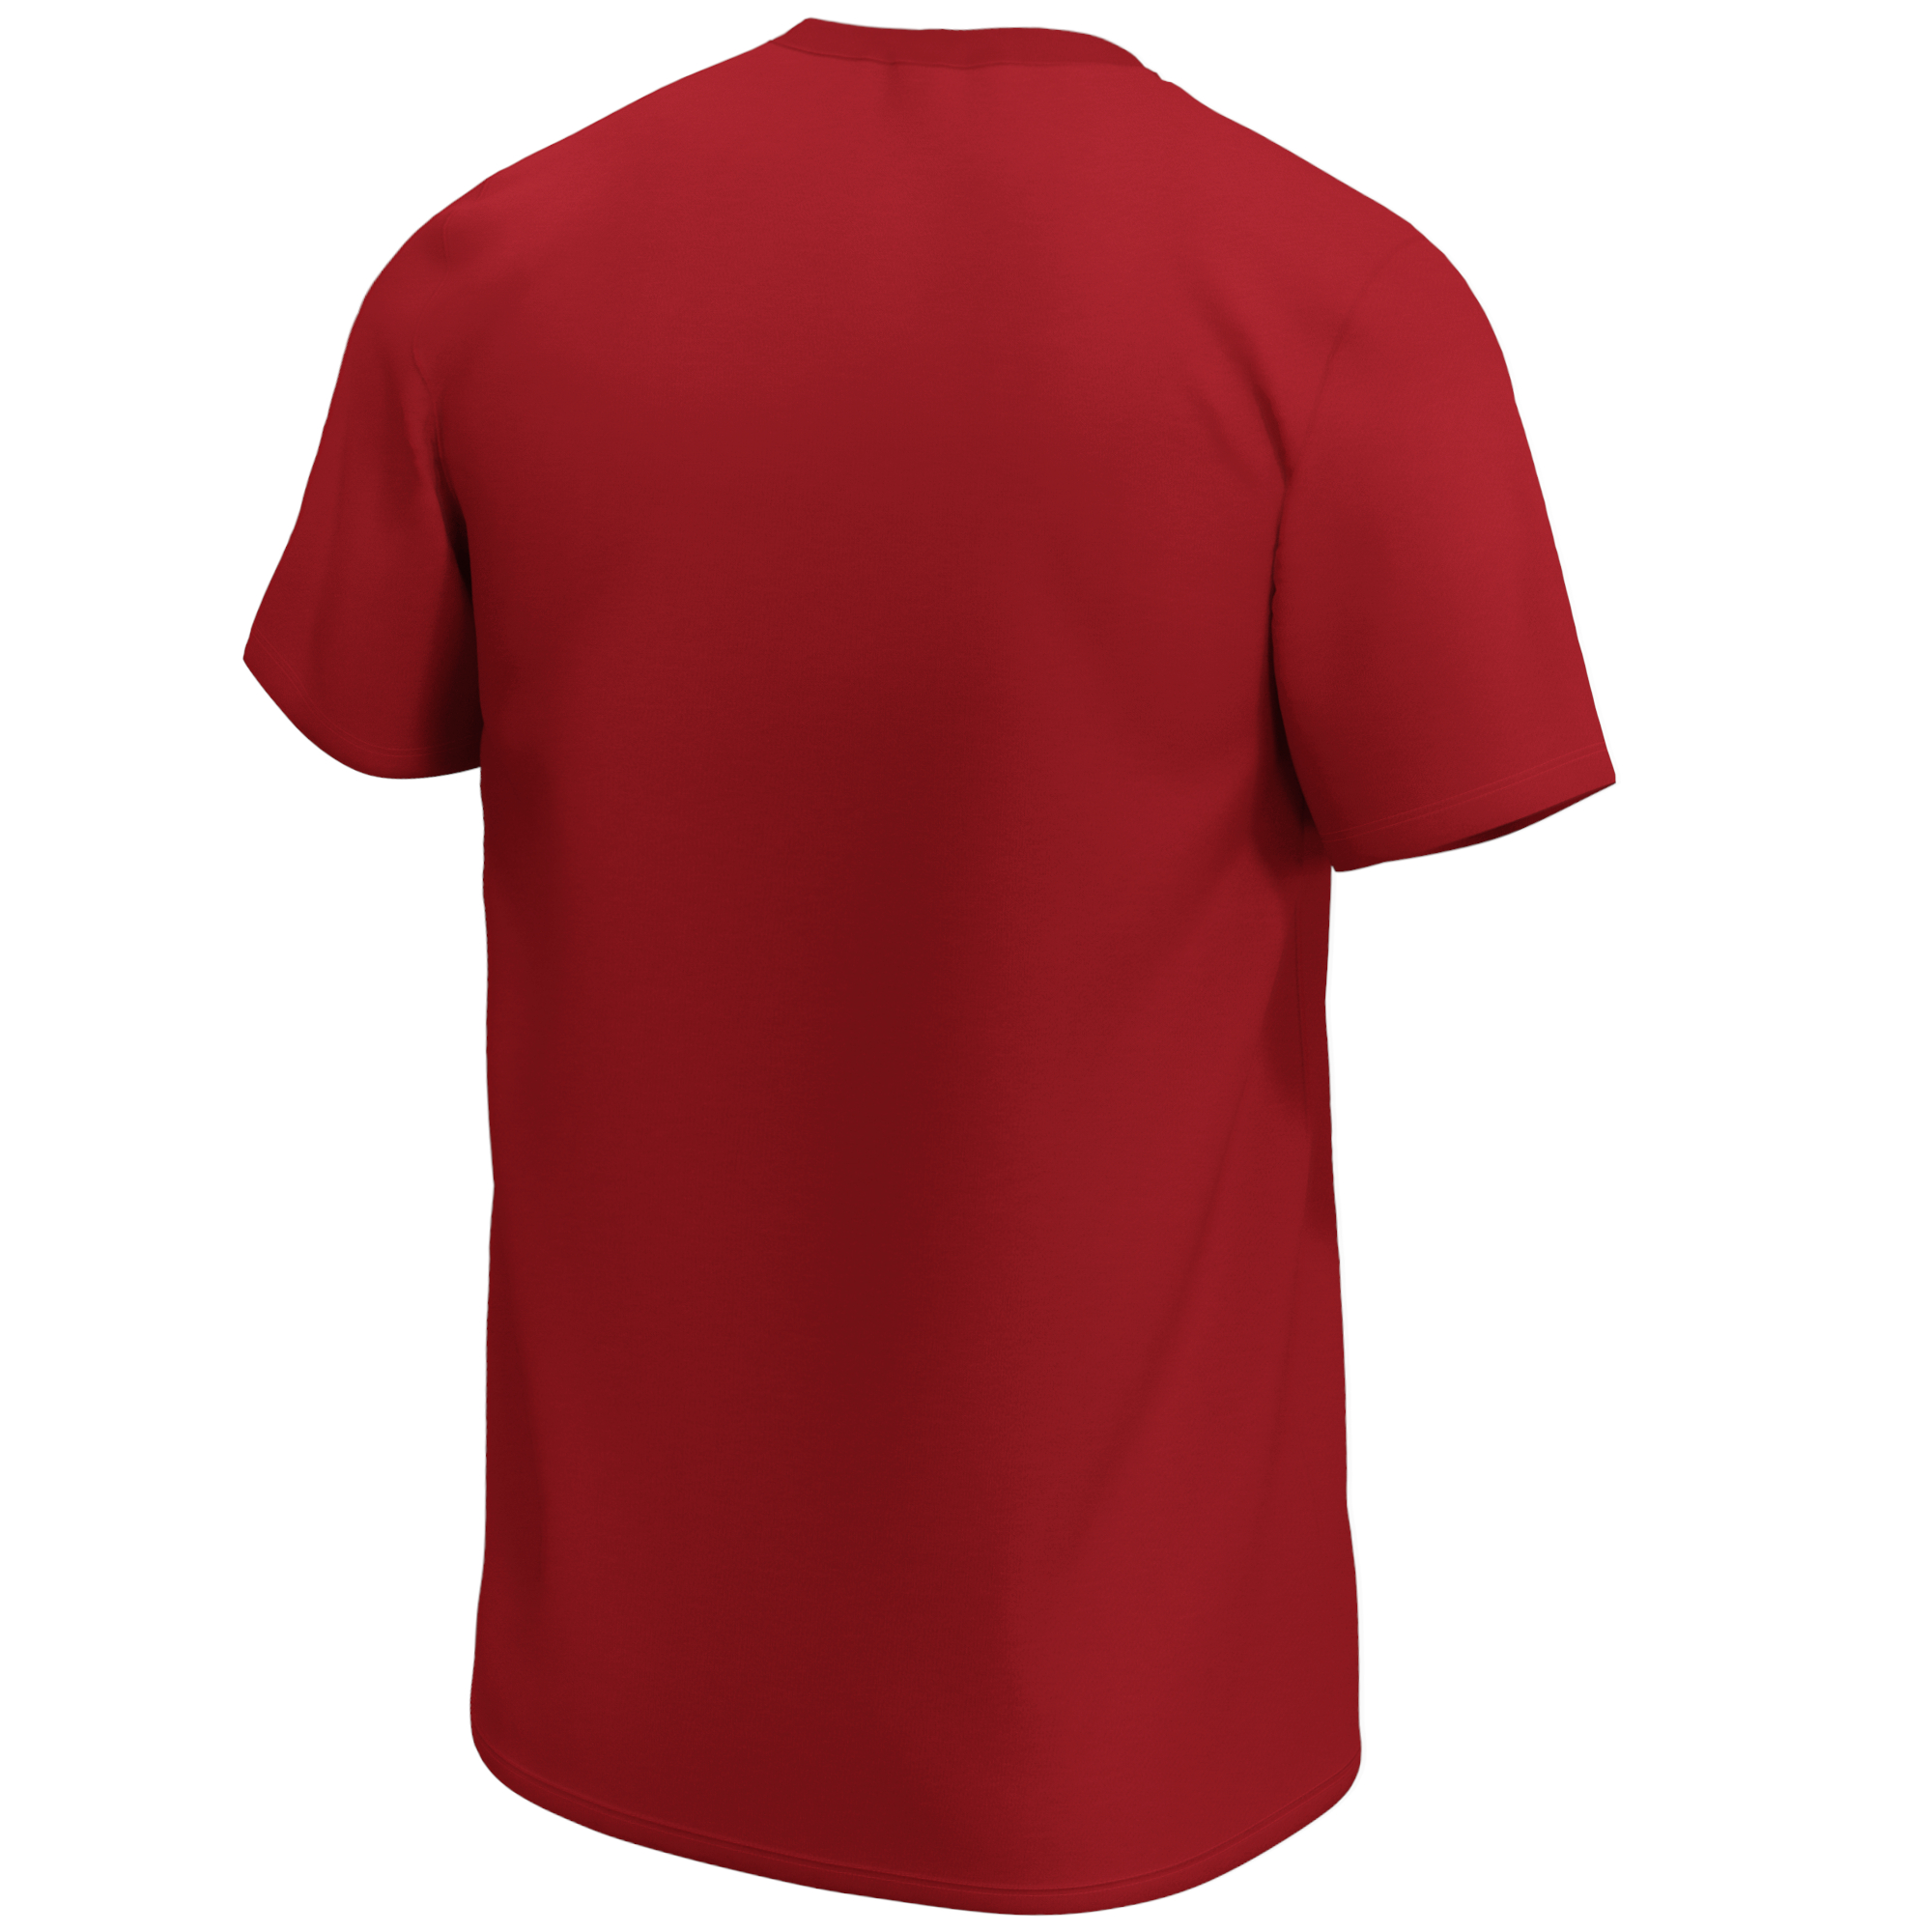 San Francisco 49ers NFL Mid Essentials Crest T-Shirt Fanatics